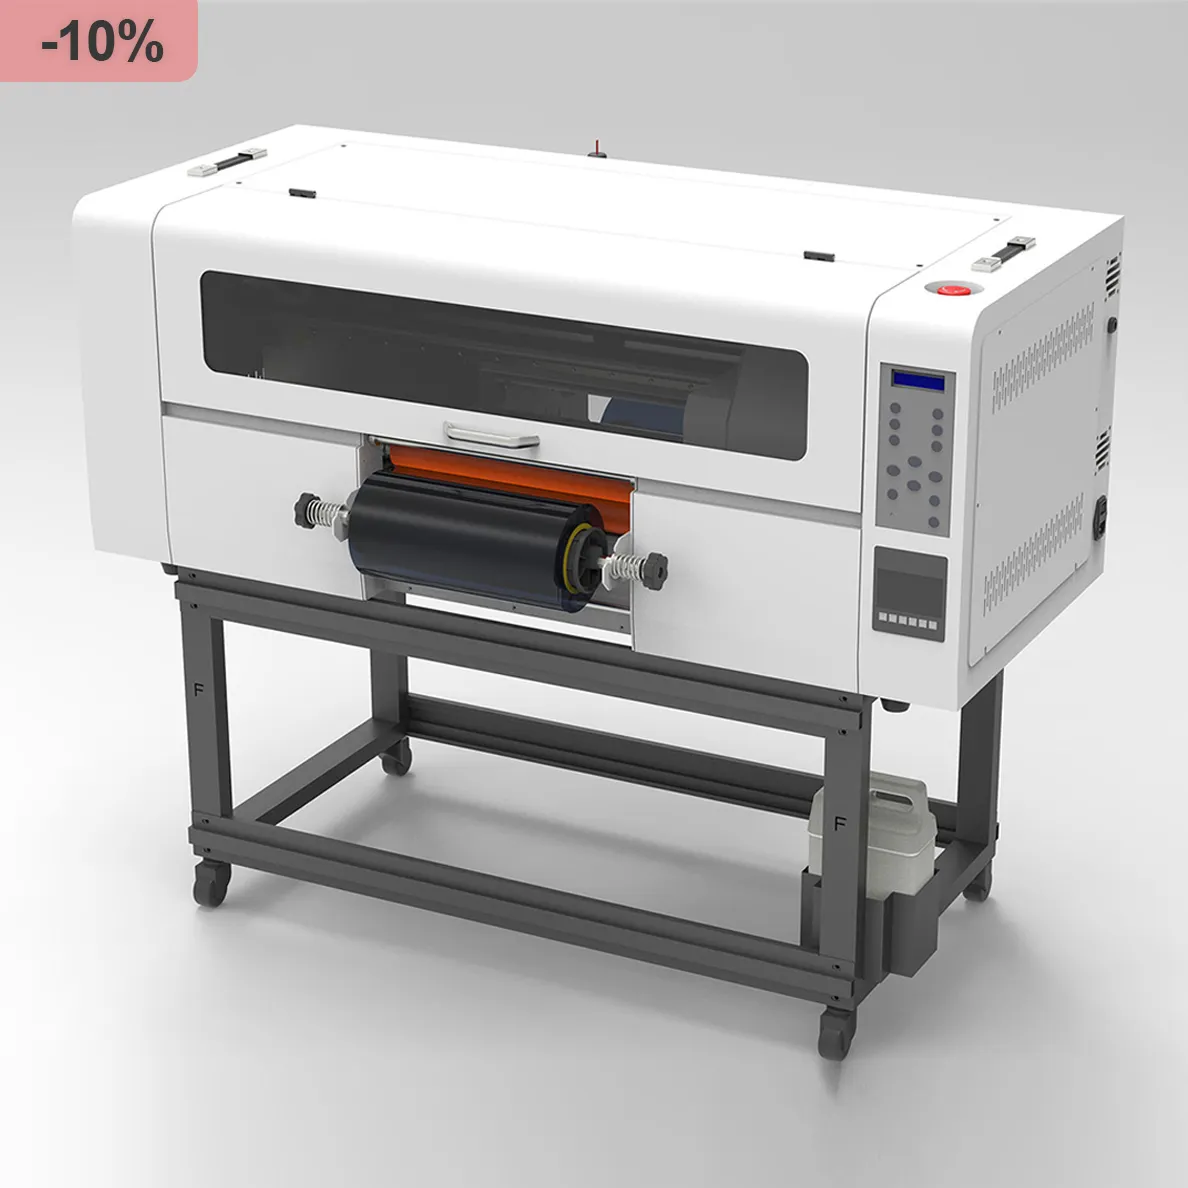 Nhà Máy Giá AB phim gỗ thủy tinh xp600 UV dtf máy in Bán buôn máy in i1600 UV dtf CuộN để cuộn impresora imprimante